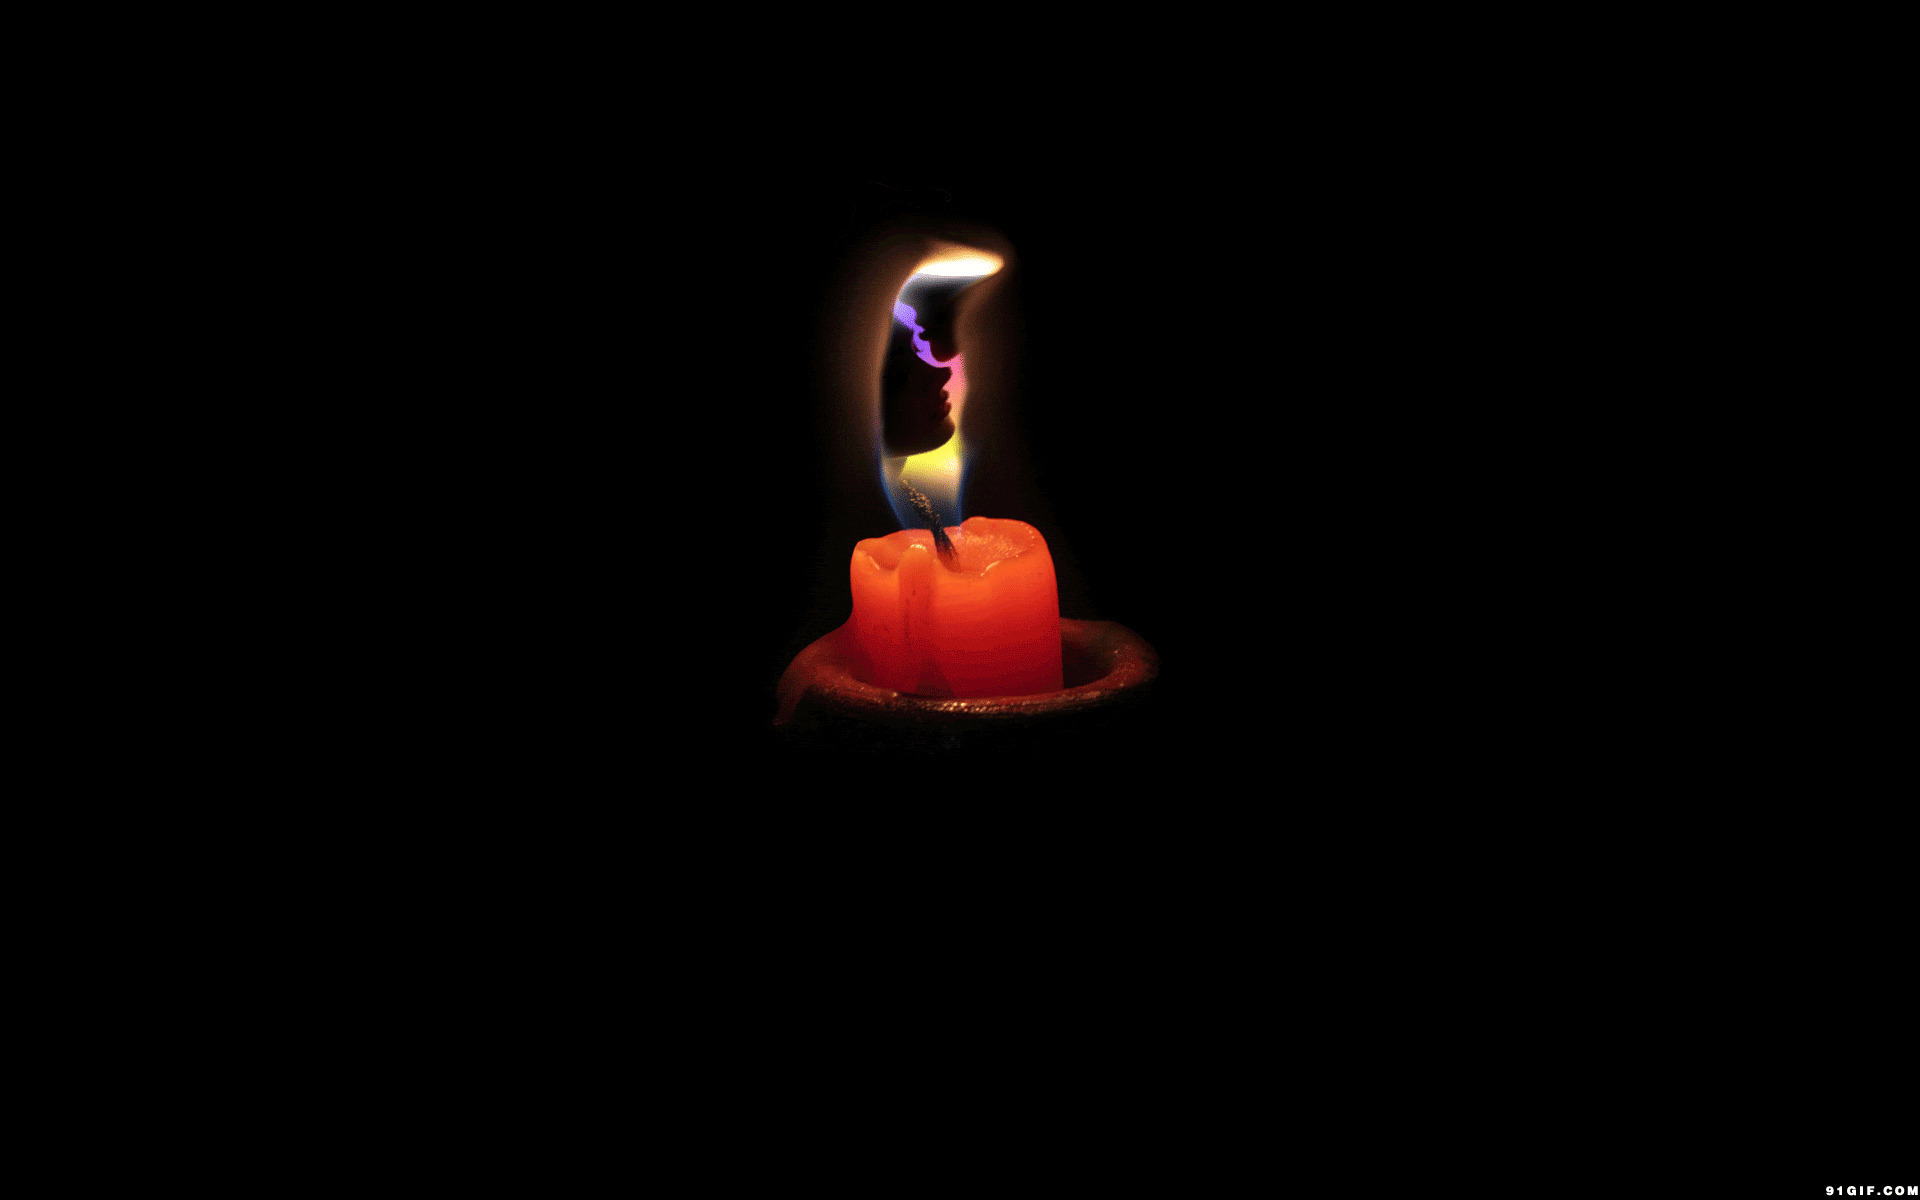 烛光里的恋人影像动态图:蜡烛,火焰